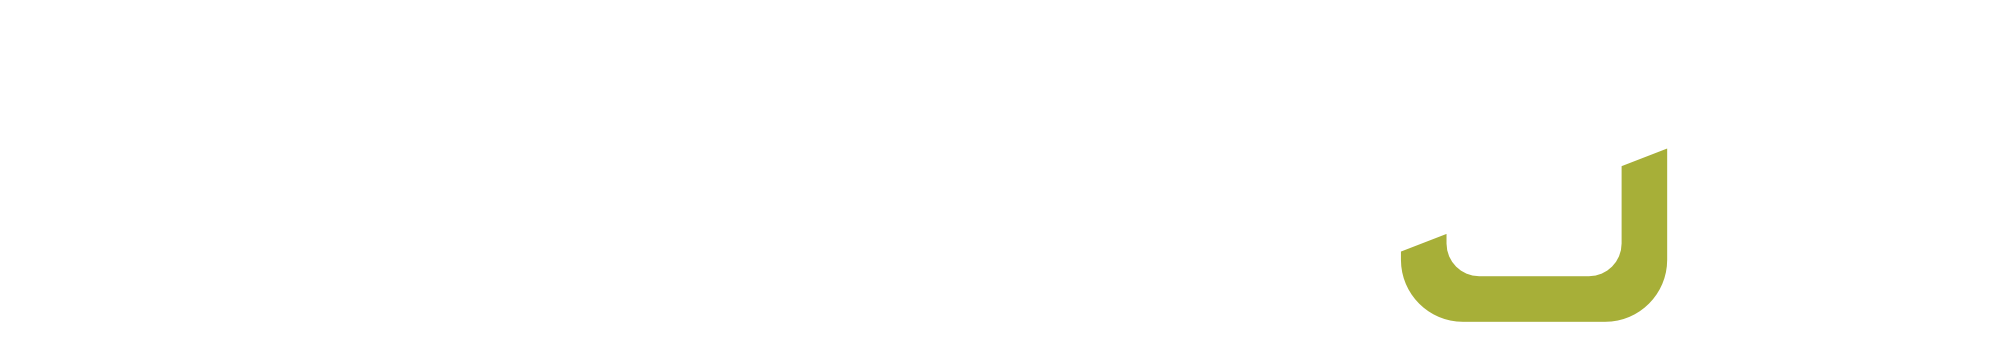 logo_vesecon_white